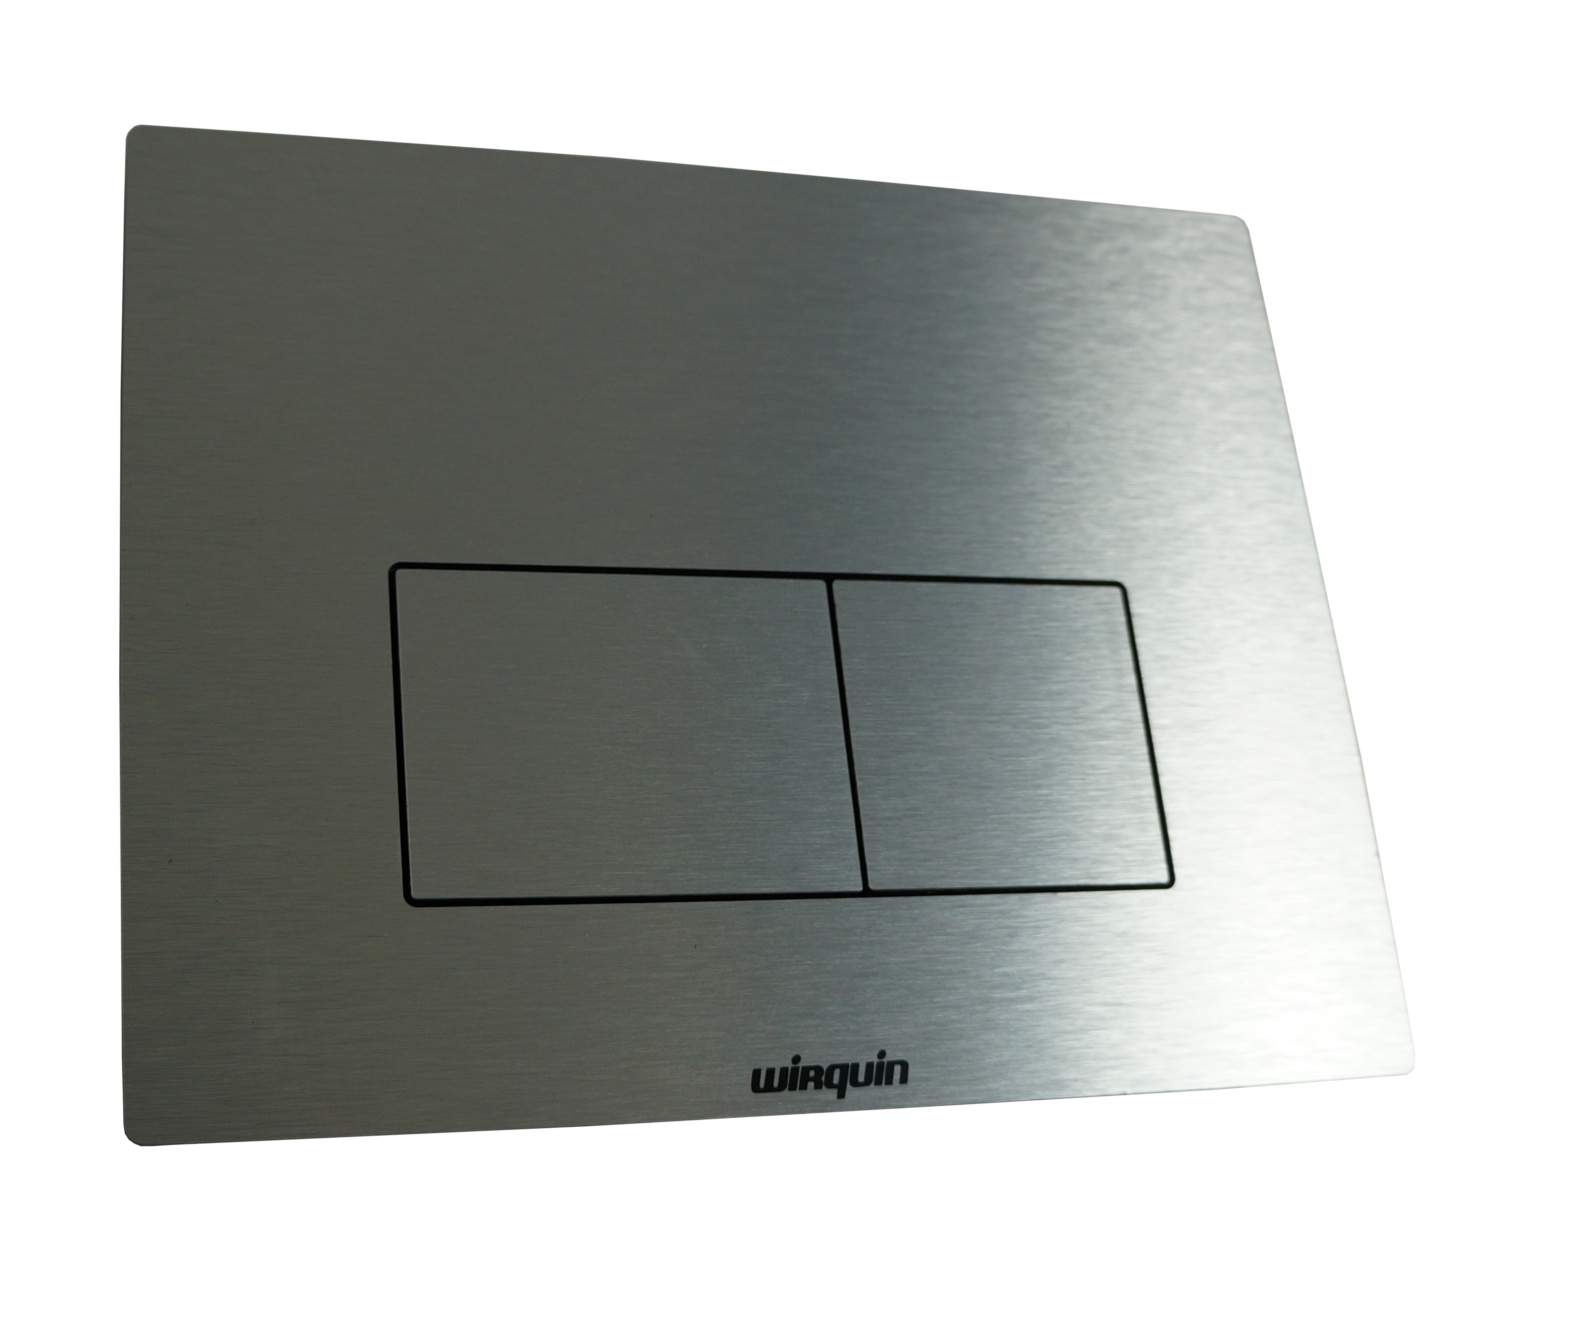 Placa de control para el marco del juego de diseño de aluminio.